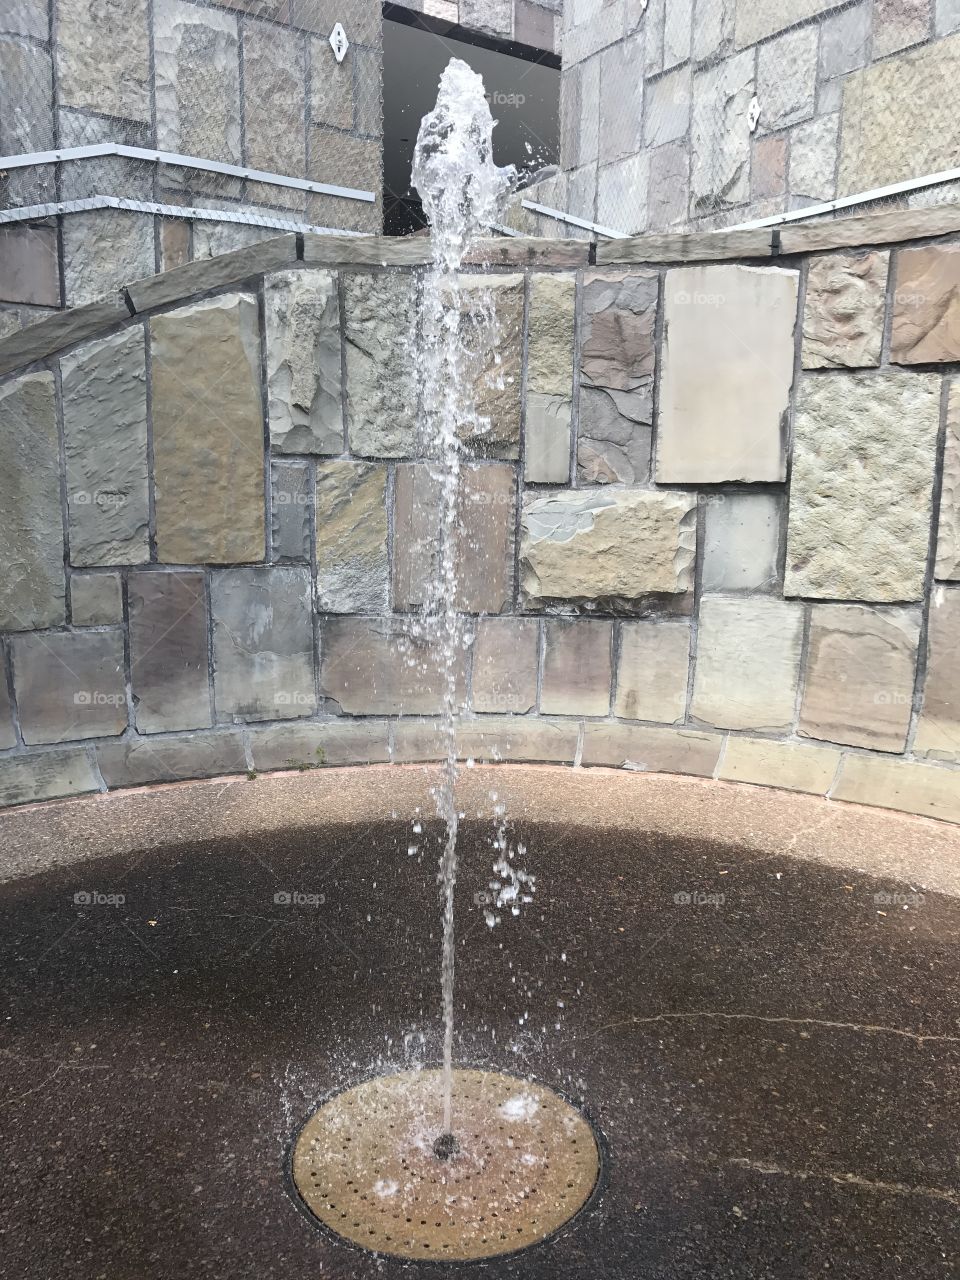 Fountain near The Egg, Albany, NY